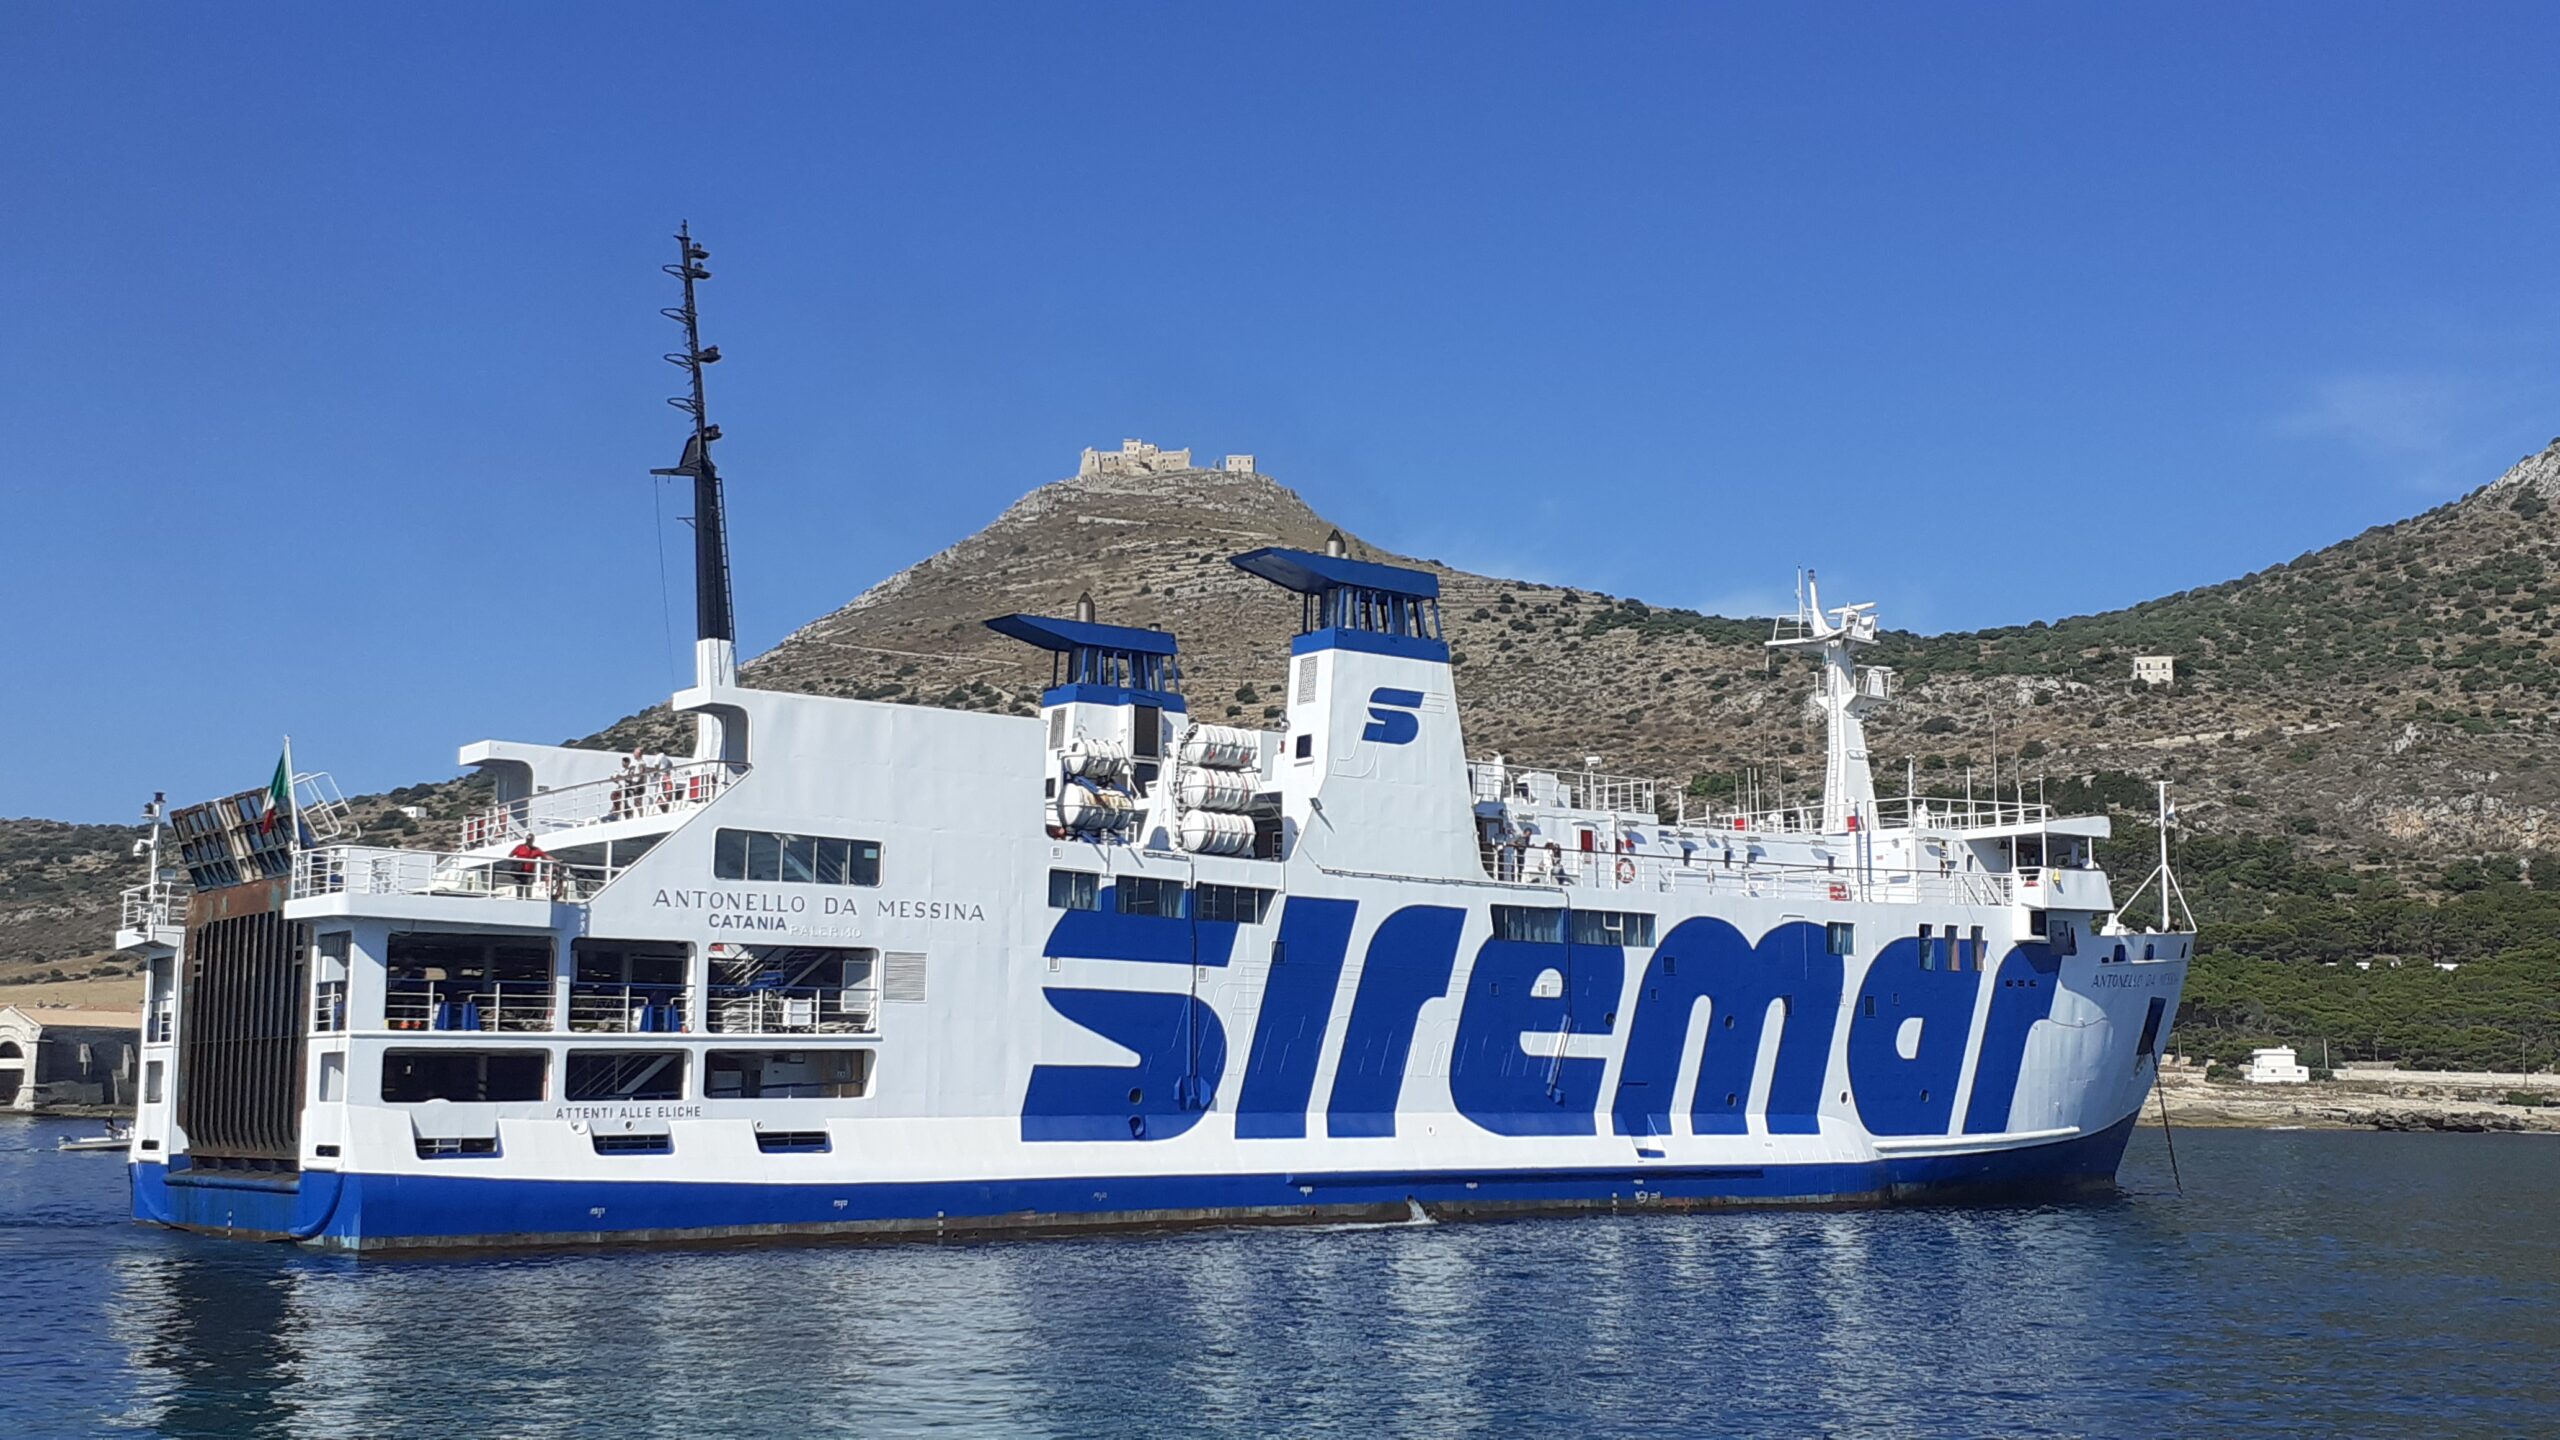 “stop dal 30 settembre ai collegamenti marittimi verso le isole Eolie, Egadi ed Ustica gestiti dalla Caronte & Tourist. A rischio 71 lavoratori”